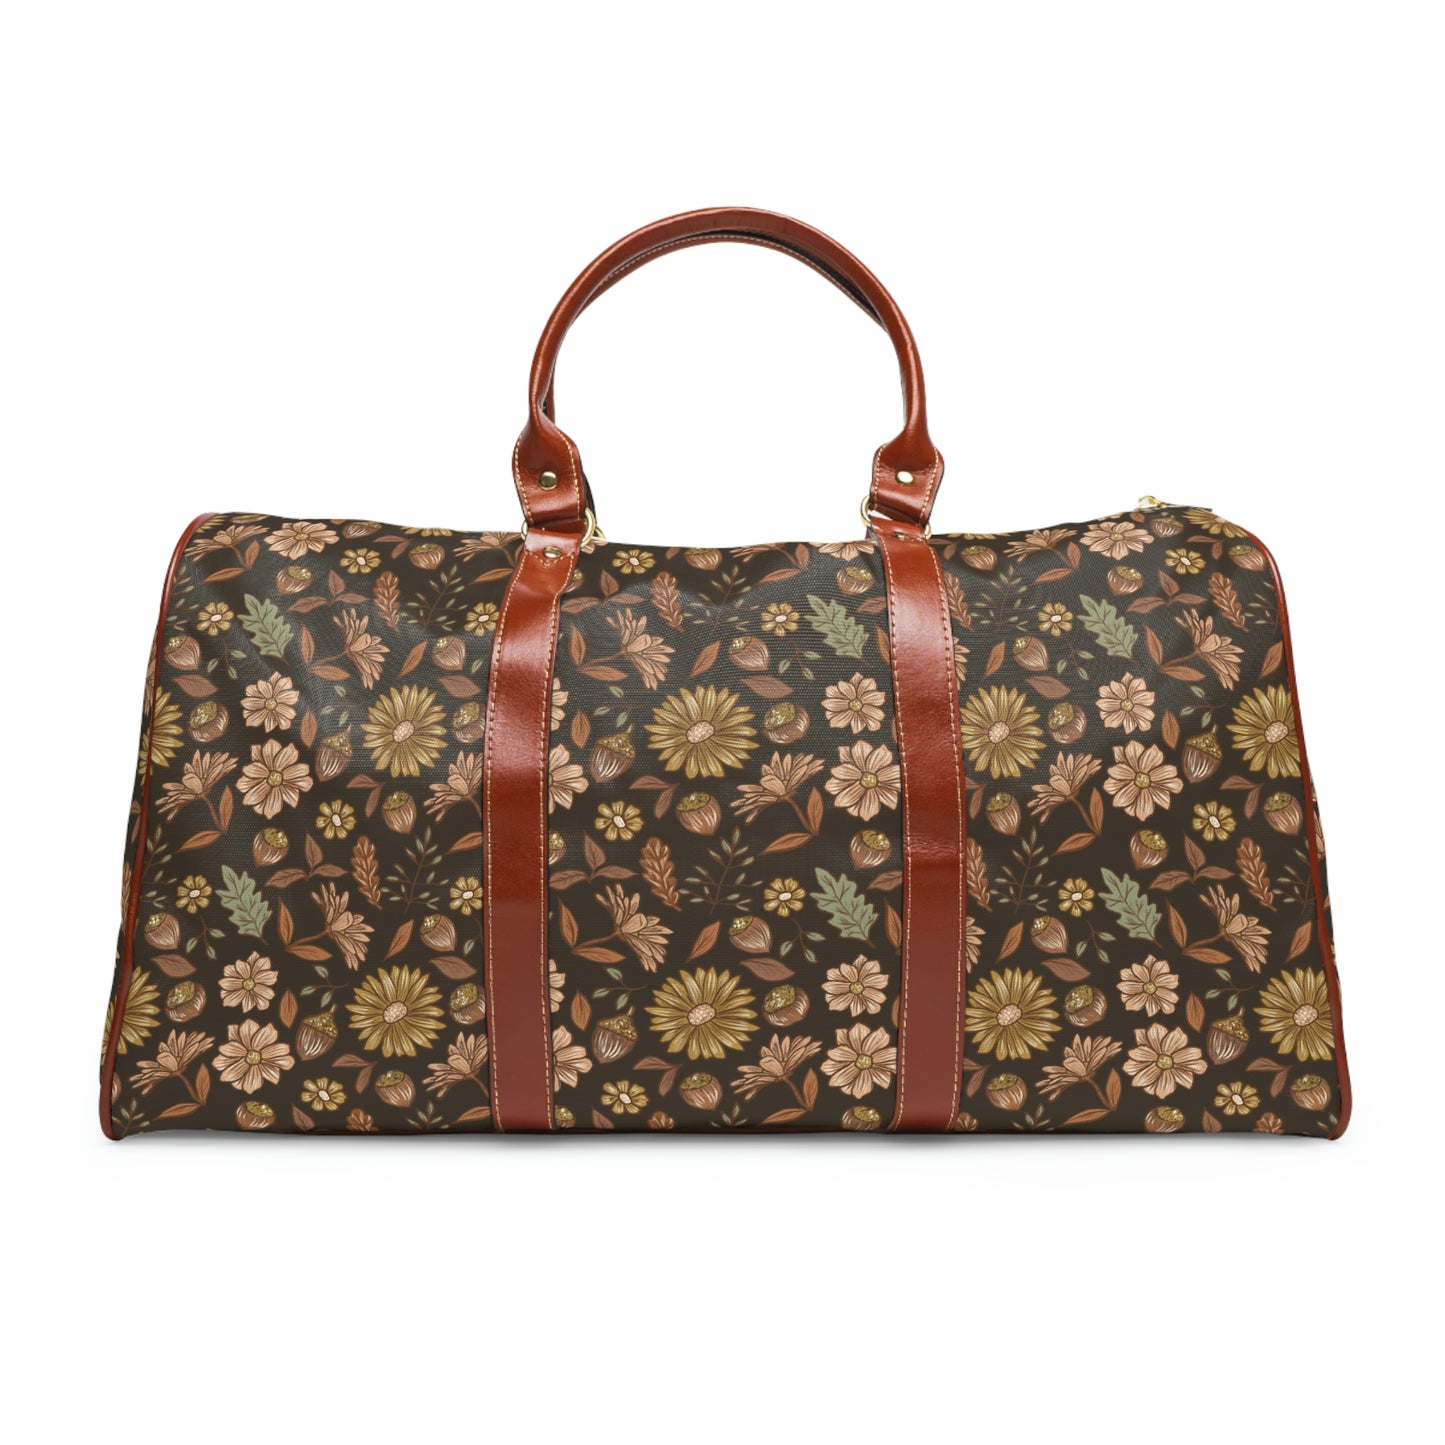 Acorn Leaves - Dark Background - Waterproof Travel Bag